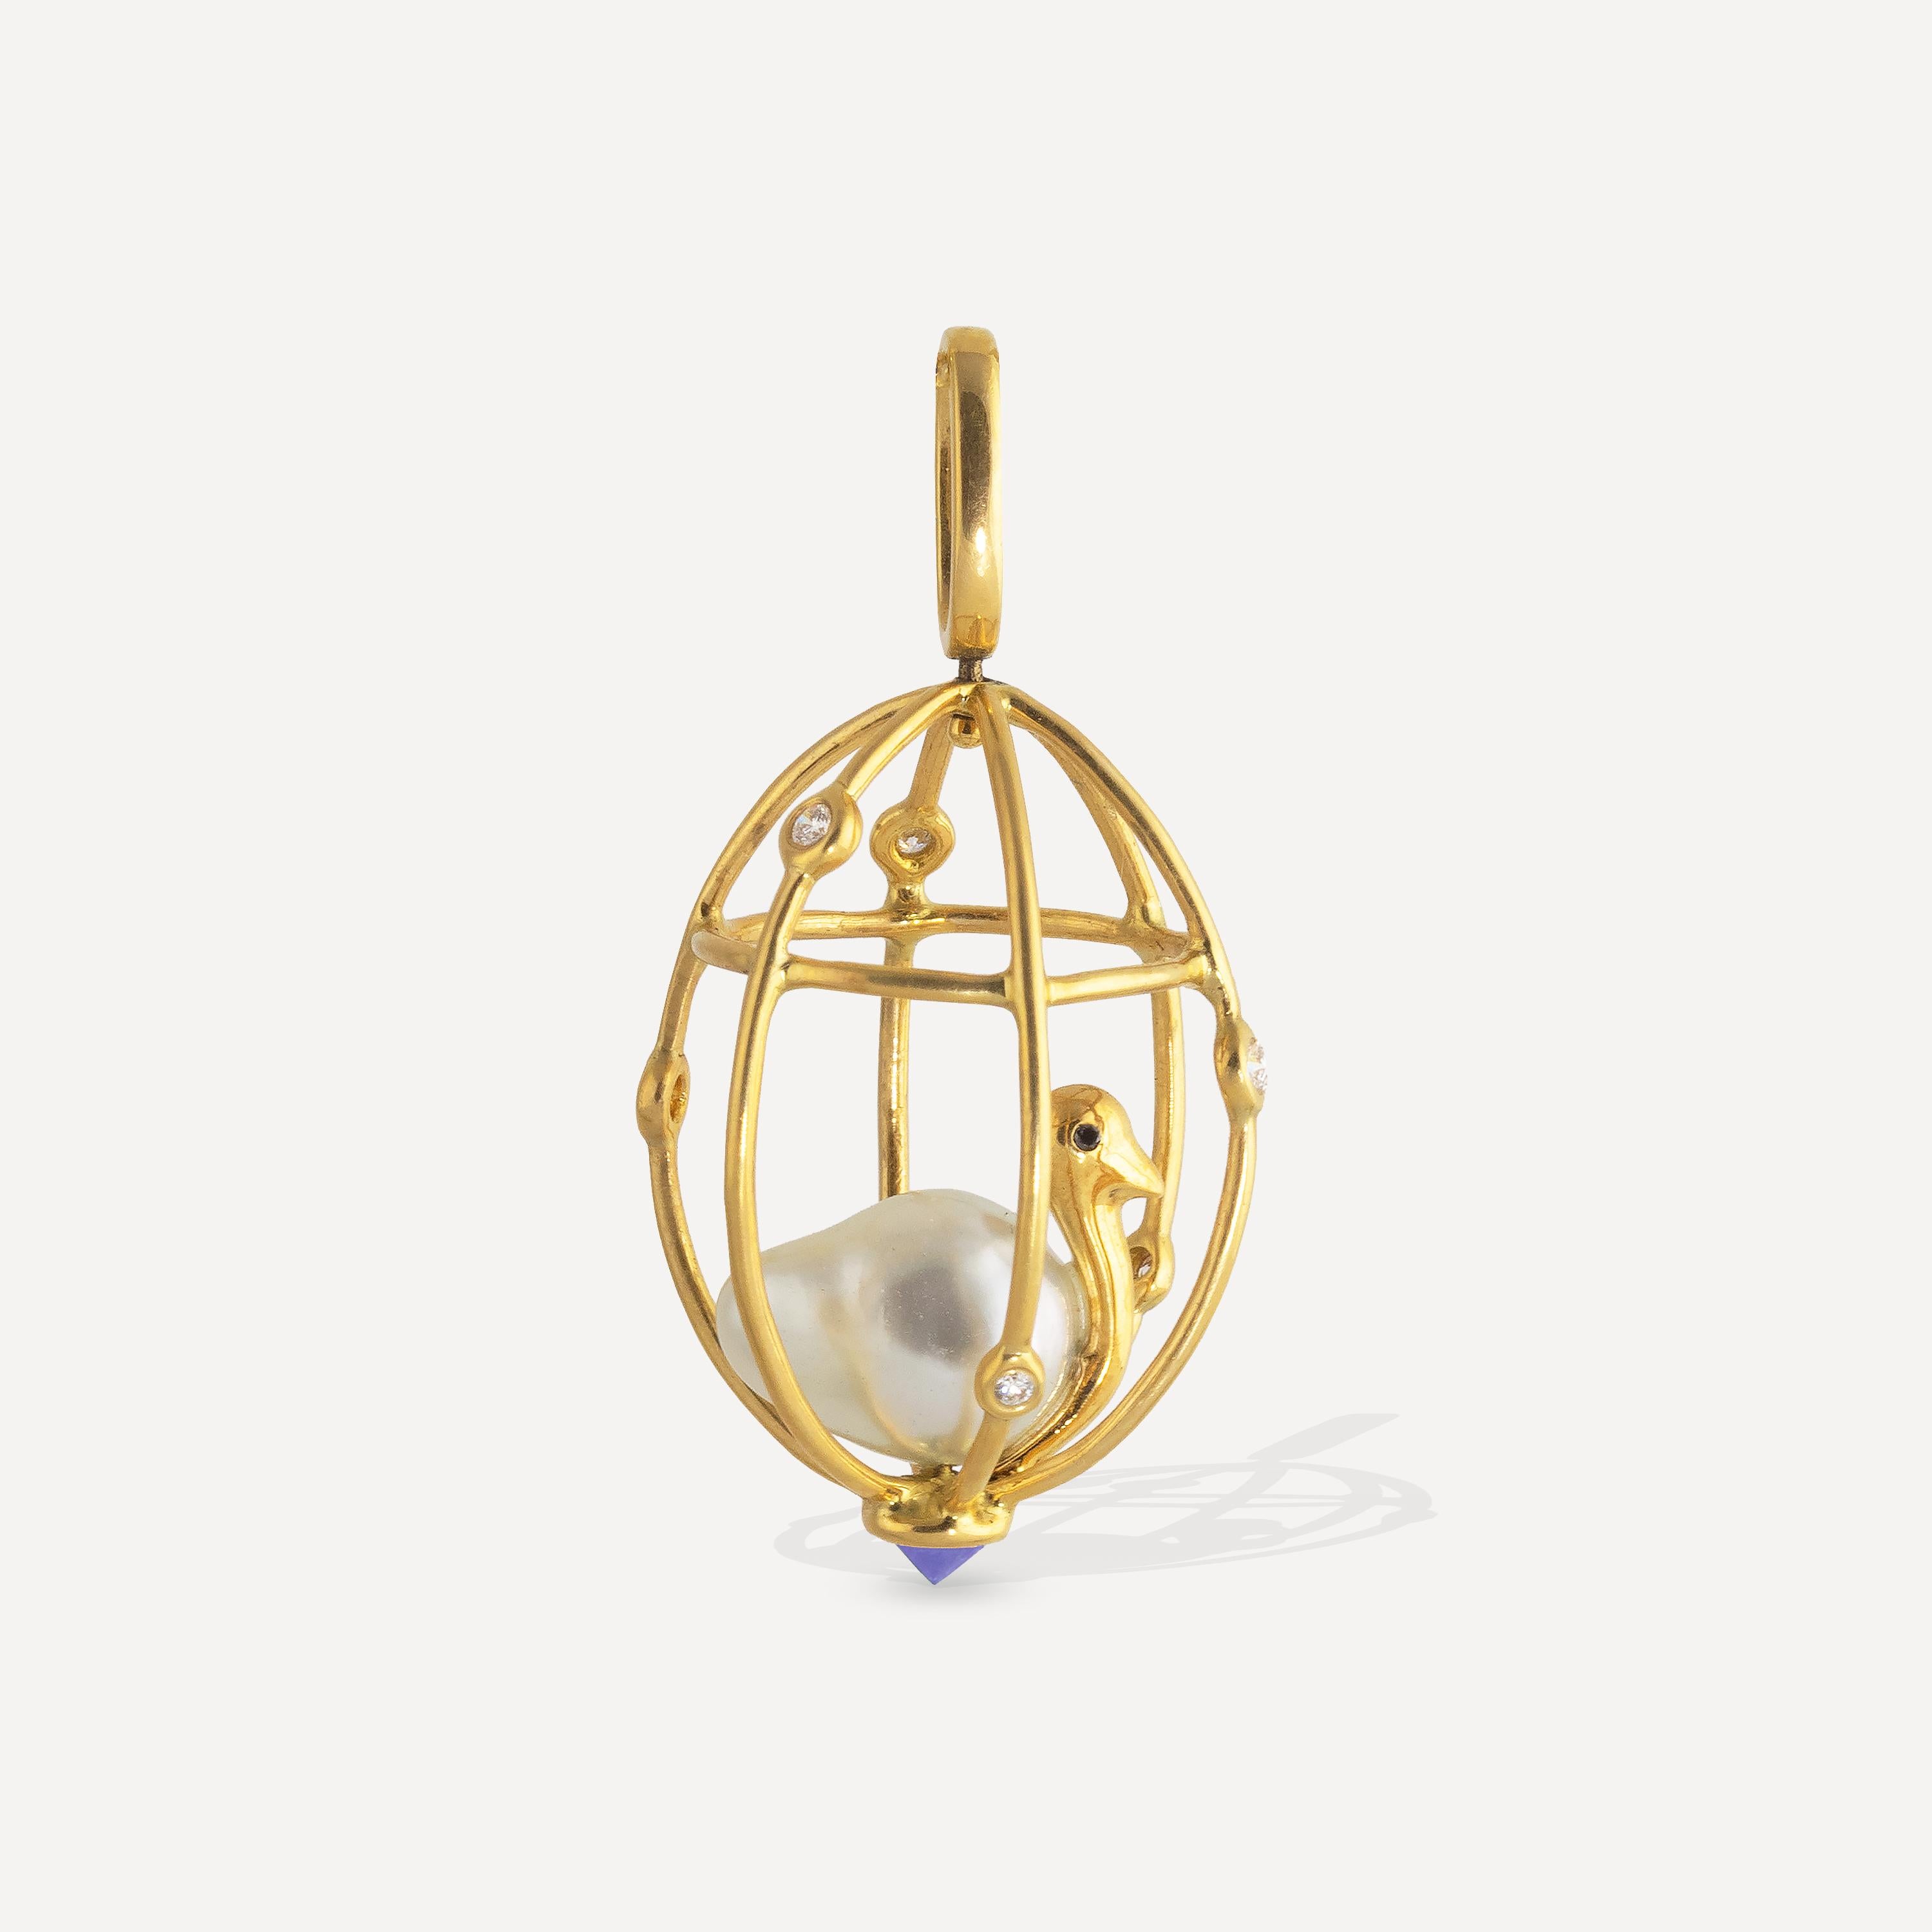 Perché à l'intérieur de cette cage sertie de diamants 18 carats se trouve un oiseau délicat, dont le corps est constitué d'une perle baroque de 12 mm x 9 mm et dont les yeux en diamant noir décorent le corps doré. Le pendentif est orné d'une